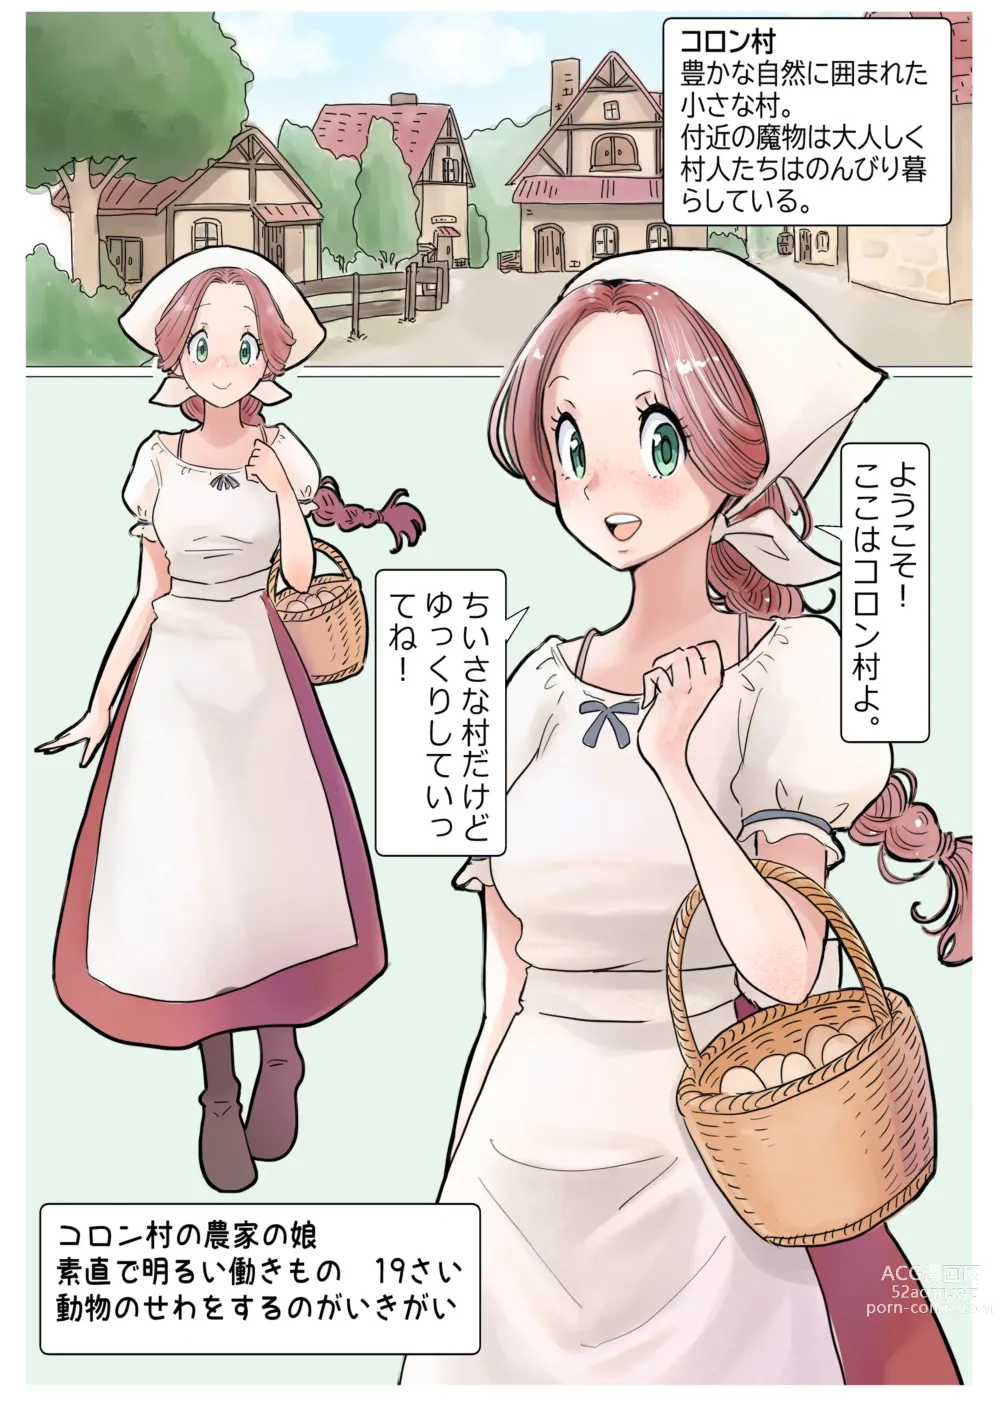 Page 4 of doujinshi RPG girls ❤︎ [NPC kan no shou] 1